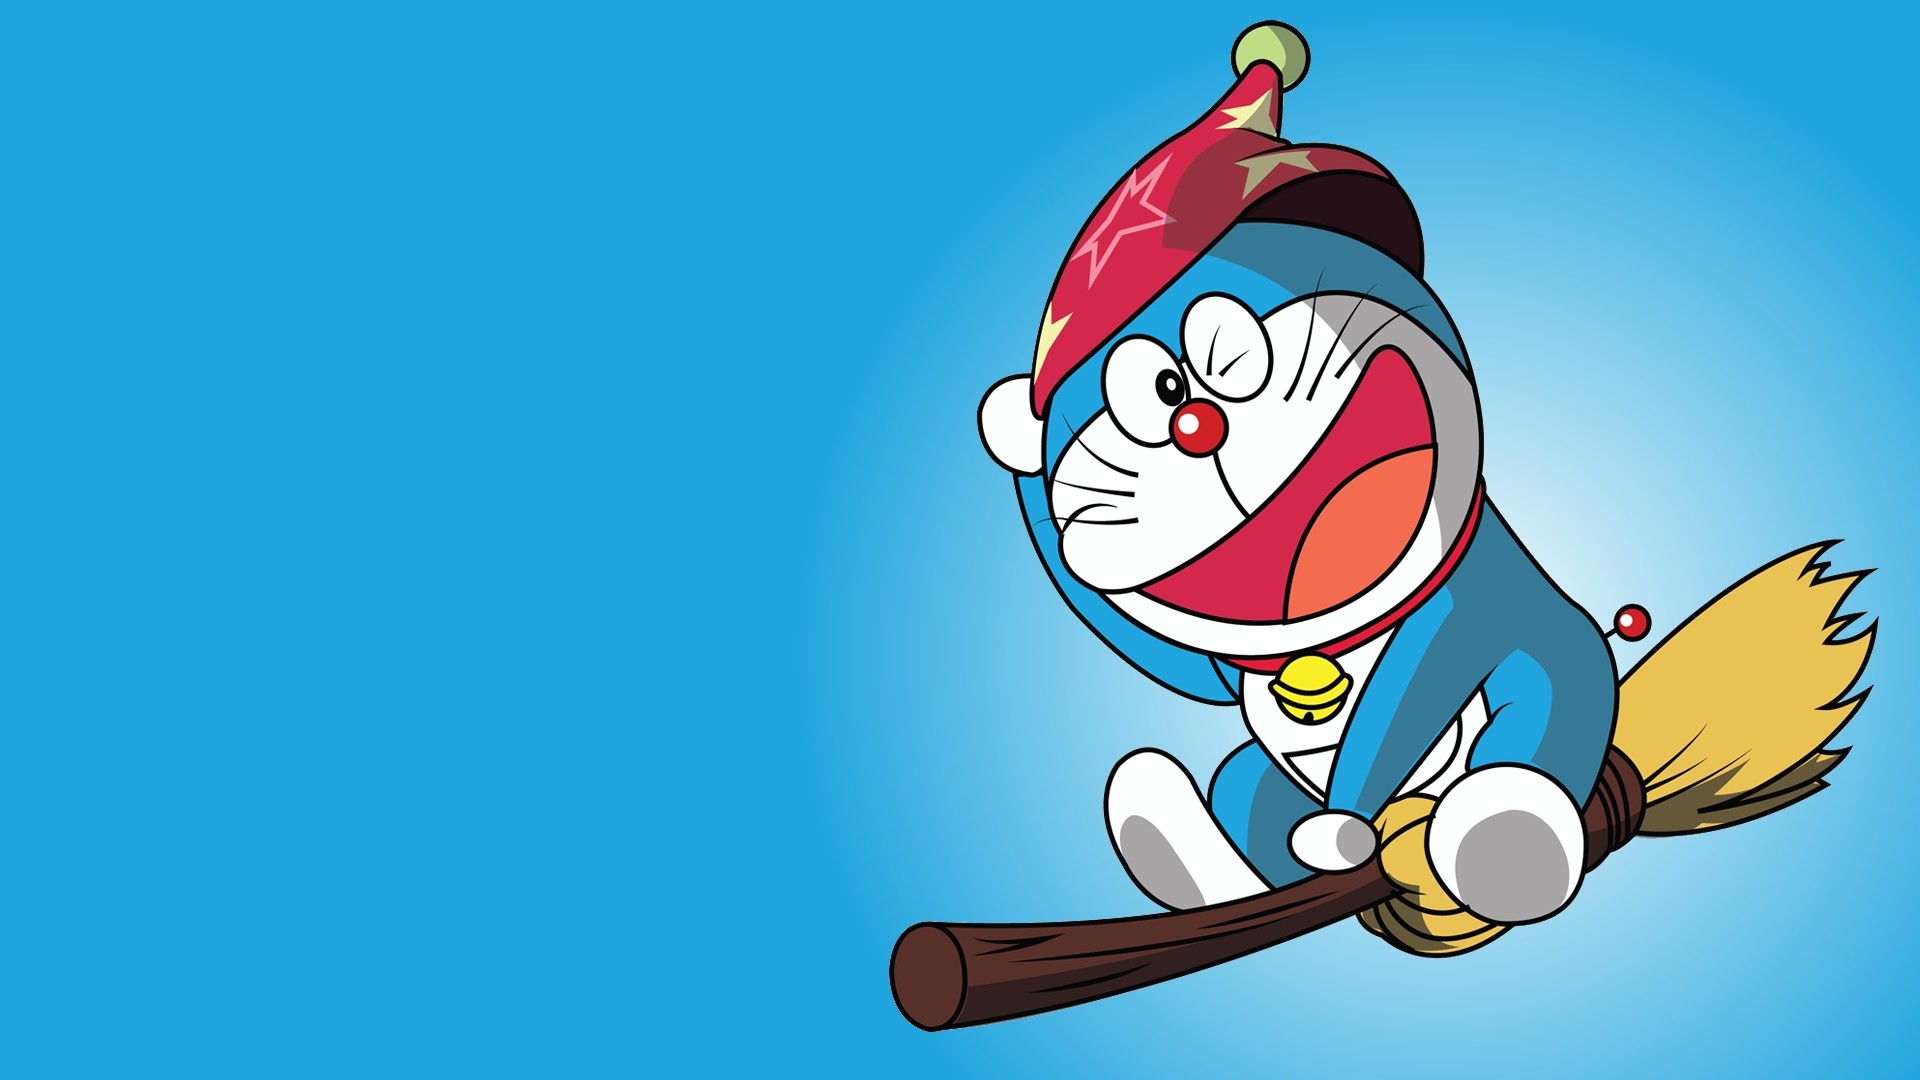 Doraemon: Hãy xem hình ảnh về chú mèo máy đáng yêu Doraemon này để thưởng thức những chuyến phiêu lưu tuyệt vời với Nobita và bạn bè.